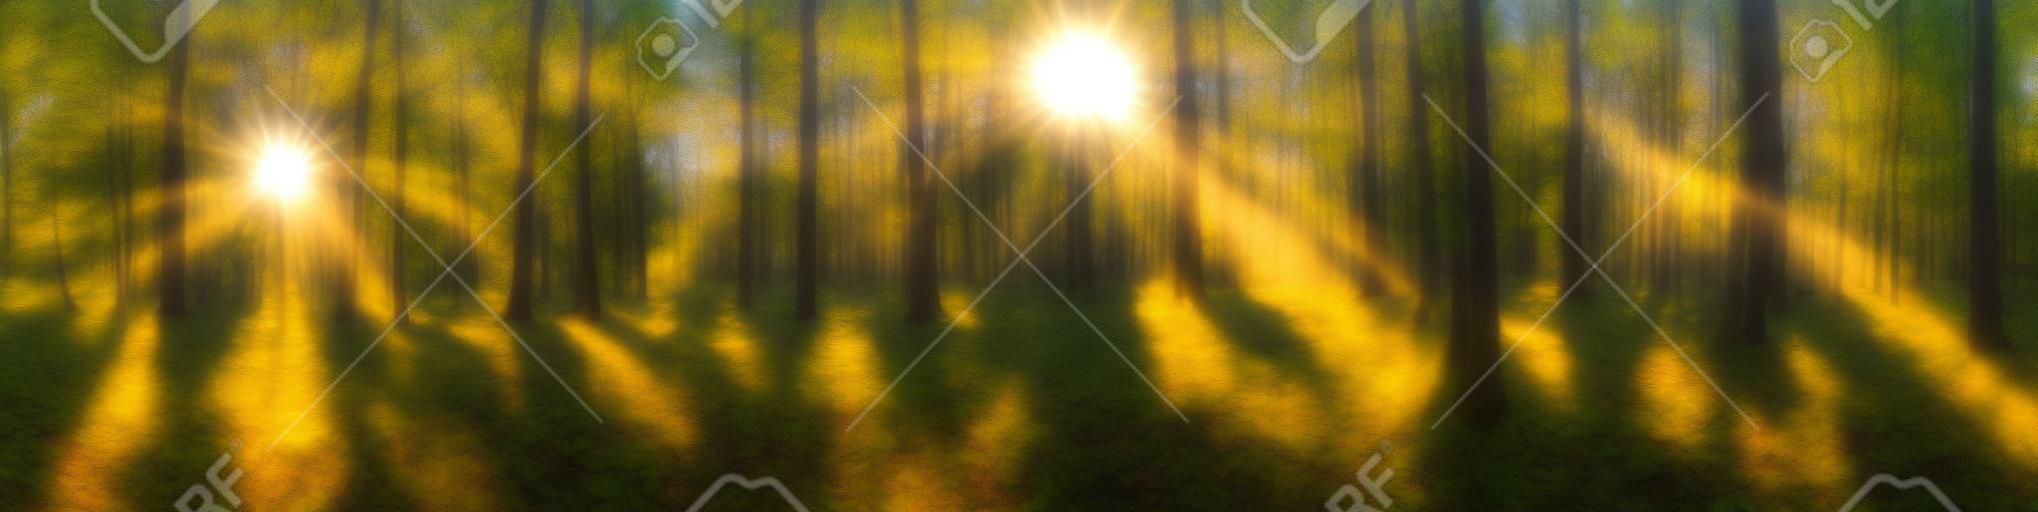 木々を照らす明るい太陽の美しい森のパノラマ